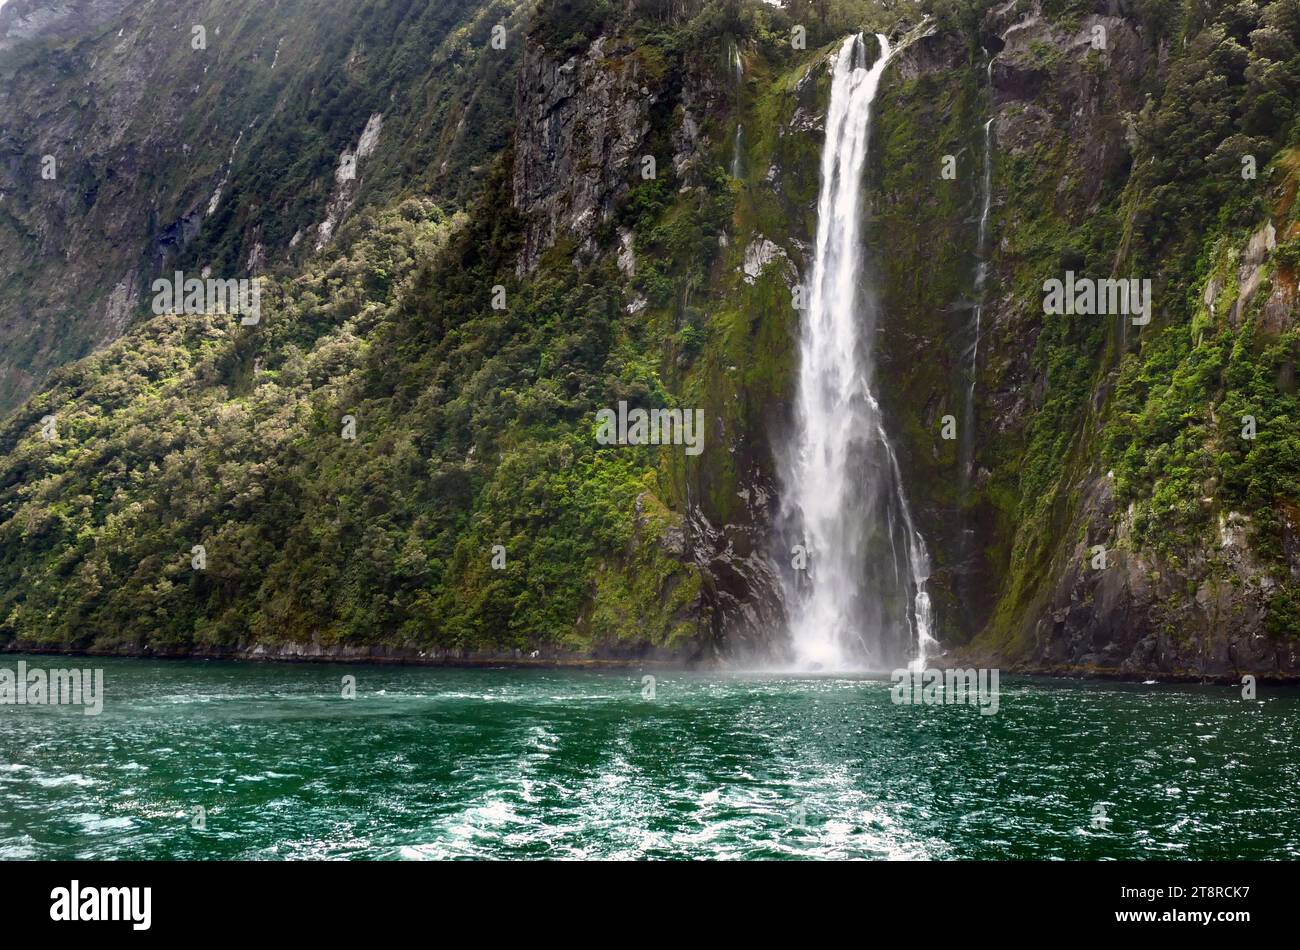 Les chutes de Stirling Milford Sound NZ, l'une des chutes incontournables de Nouvelle-Zélande, Stirling Falls, deuxième nom Waimanu Falls, est la plus magnifique cascade dans le célèbre Milford Sound du monde. Accessible via une croisière Milford Sound ou un vol panoramique Milford Sound Banque D'Images